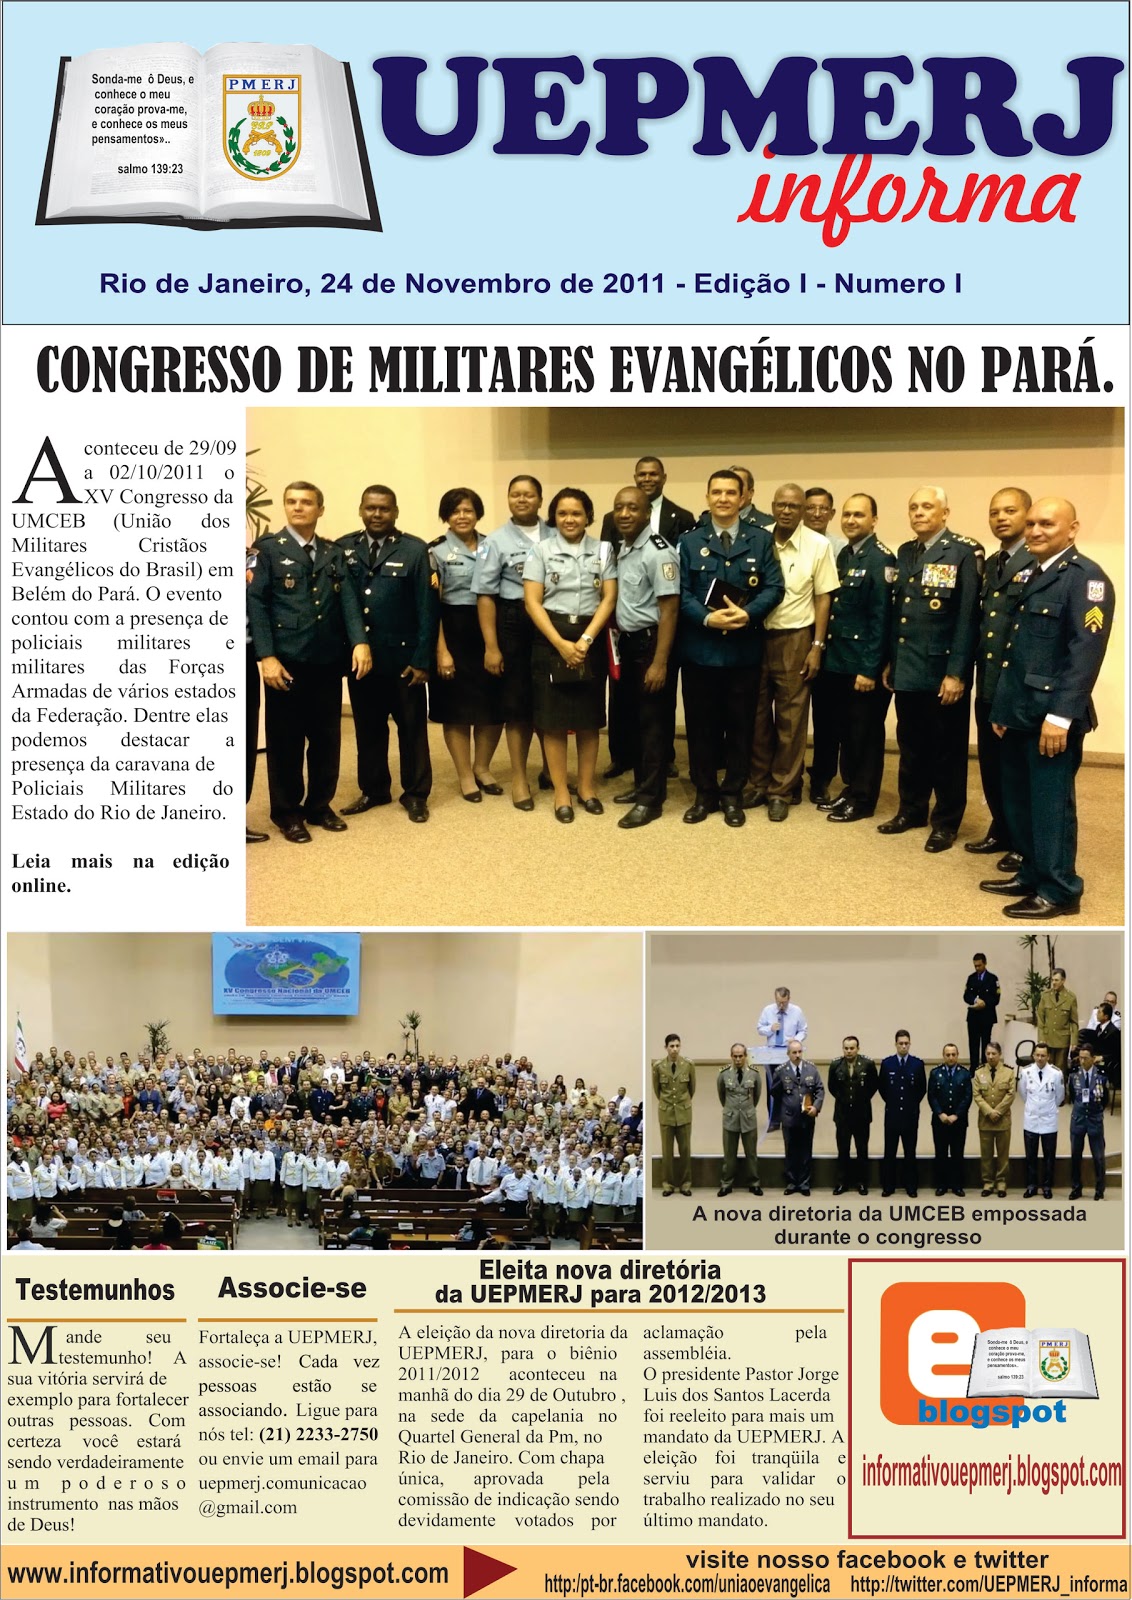 UMCEB - União de Militares Cristãos Evangélicos do Brasil